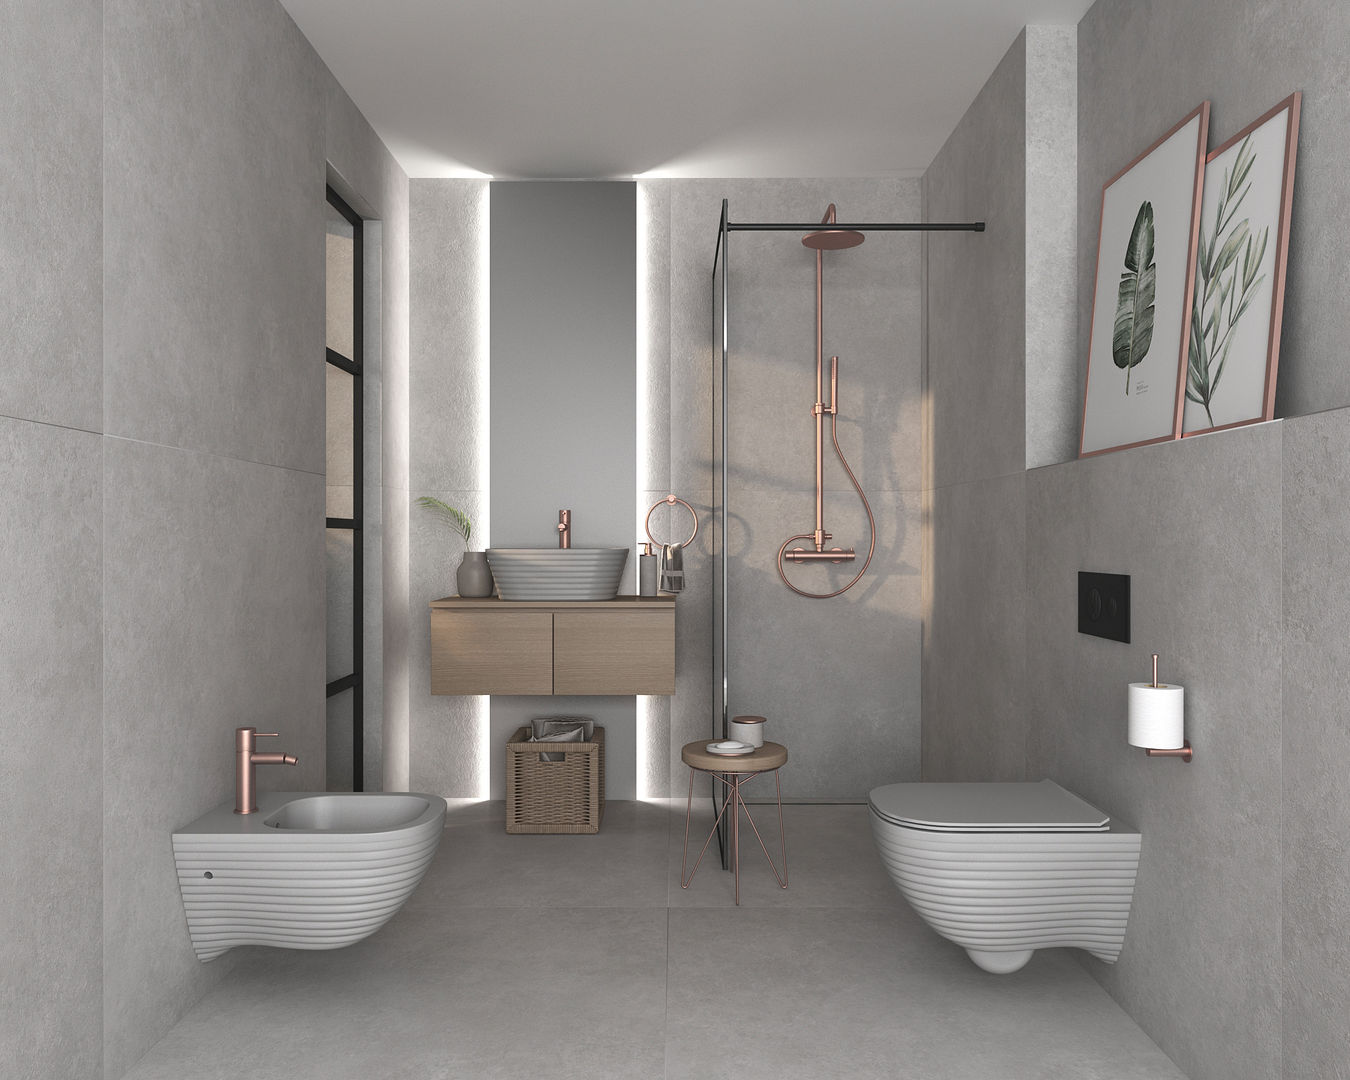 Casa de banho com acabamento mate, Smile Bath S.A. Smile Bath S.A. Modern style bathrooms Ceramic